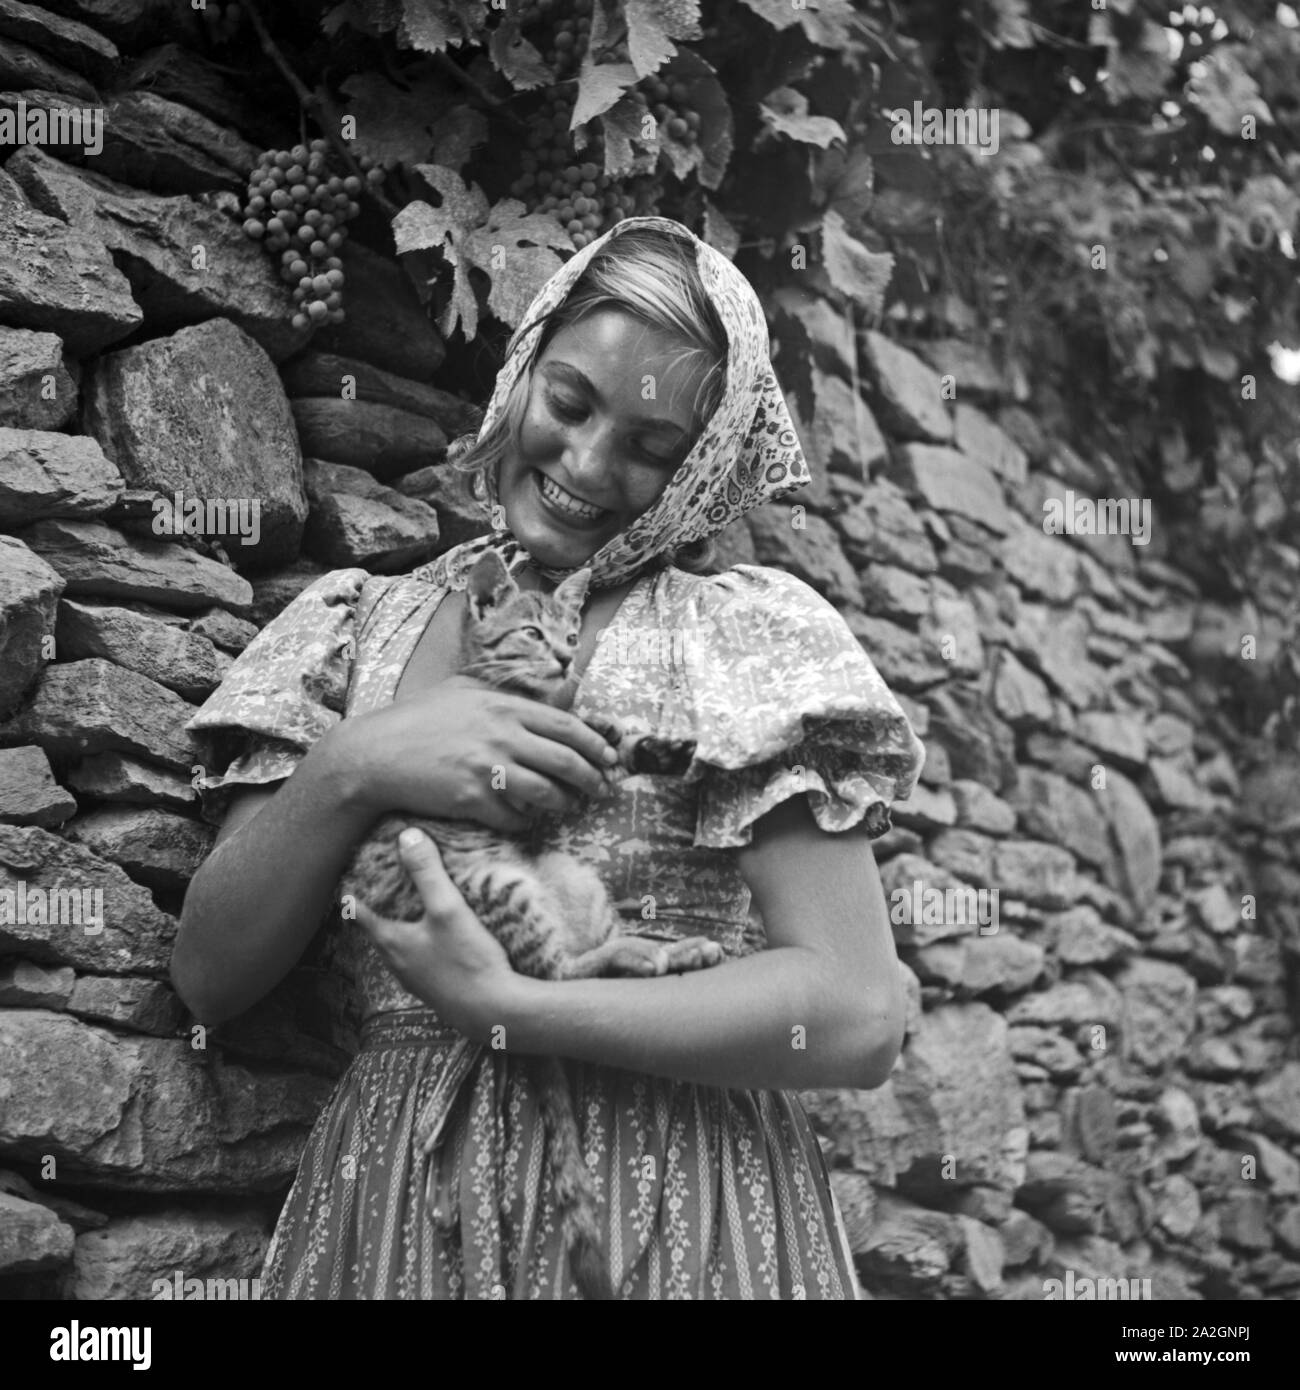 Eine junge Frau spielt in einem Weinberg mit einer Katze, Österreich 1930er Jahre. Une jeune femme jouant avec un chat dans un vignoble, Autriche 1930. Banque D'Images